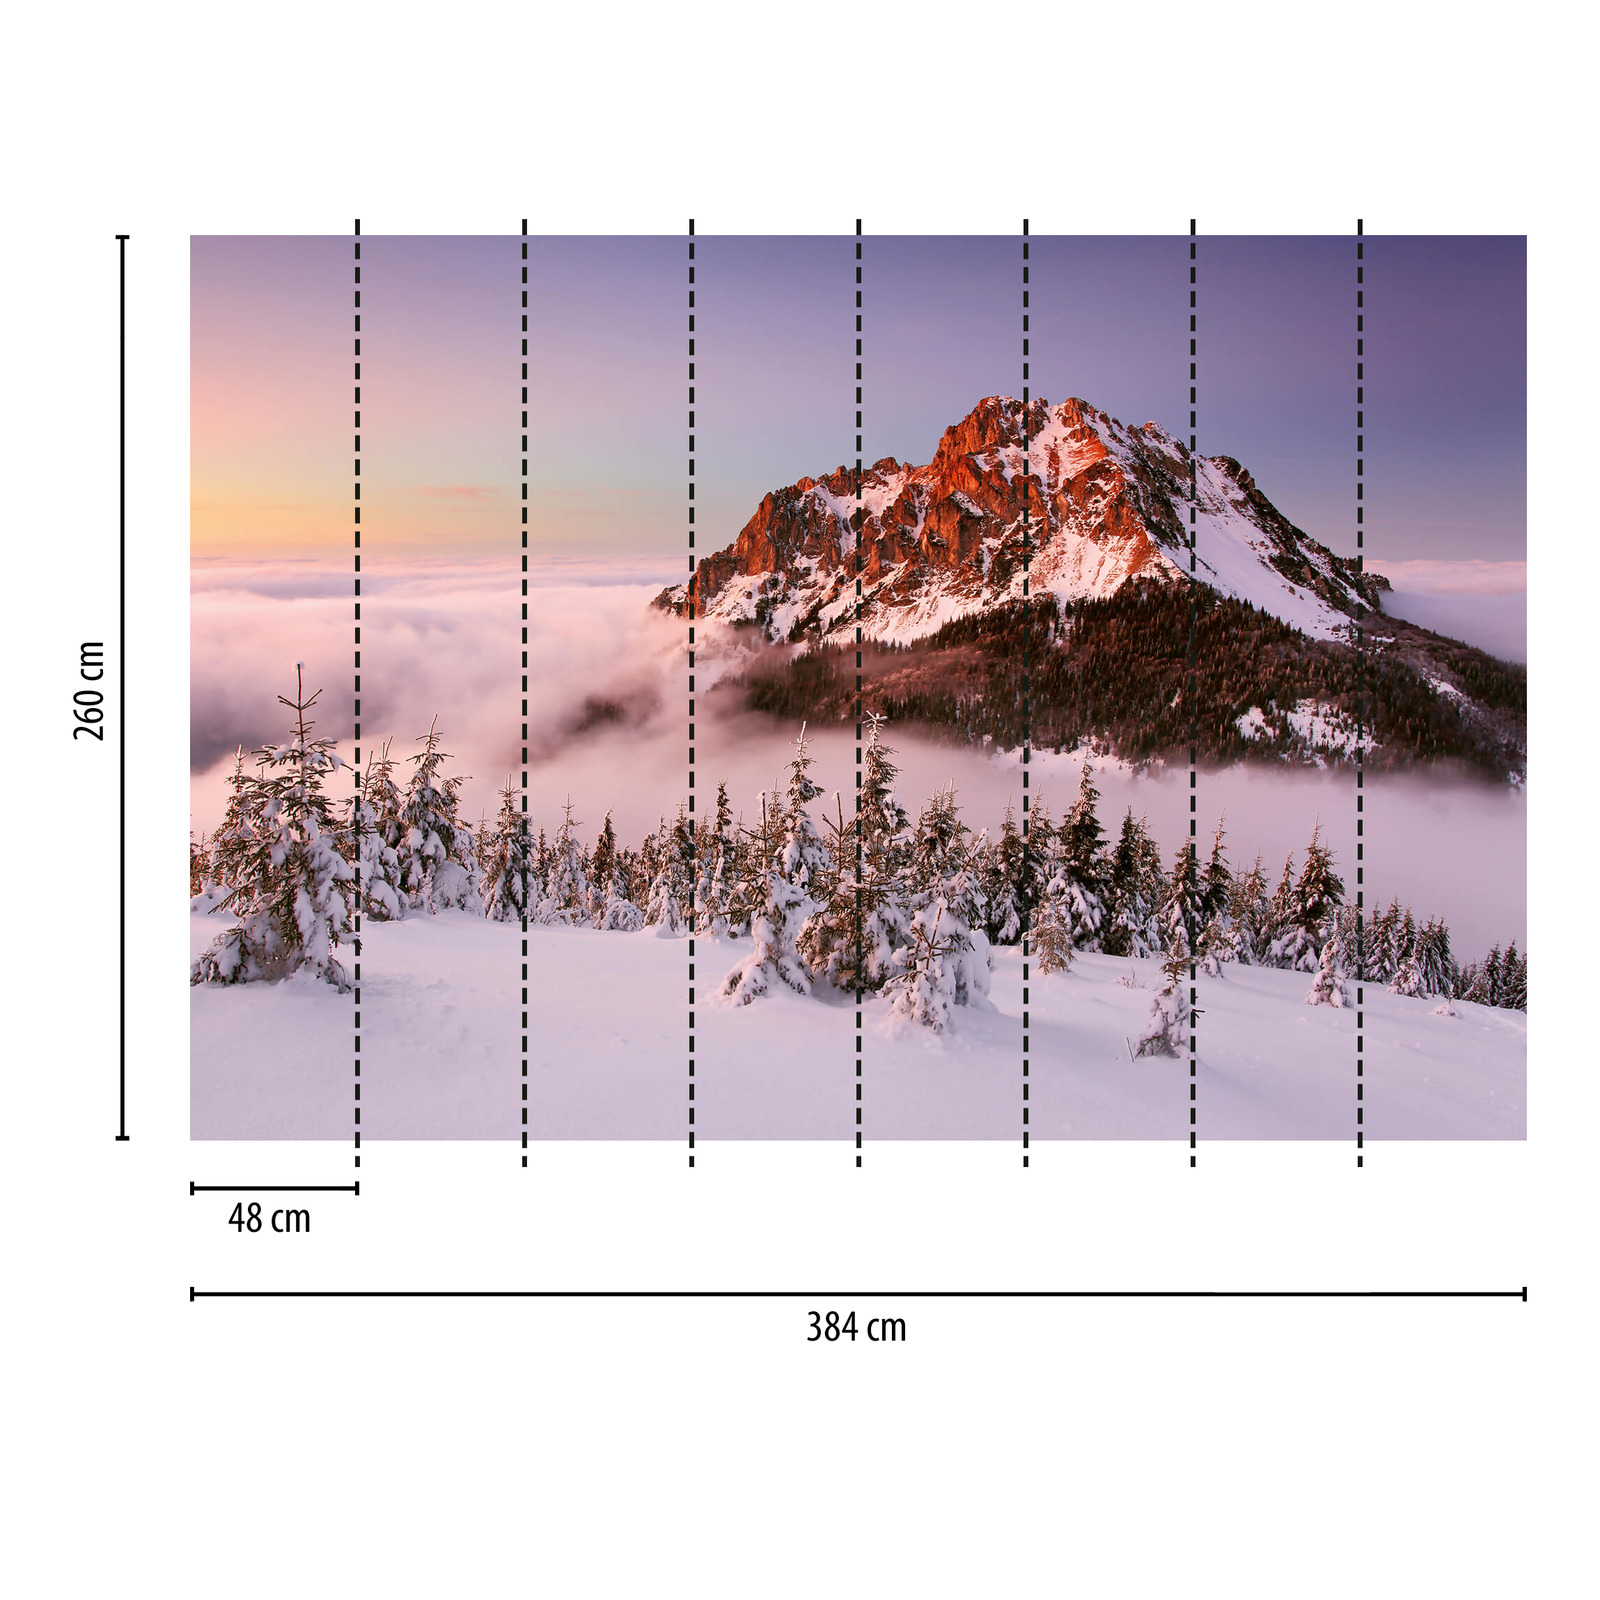             Fototapete Bergspitze mit Schnee – Weiß, Braun, Grün
        